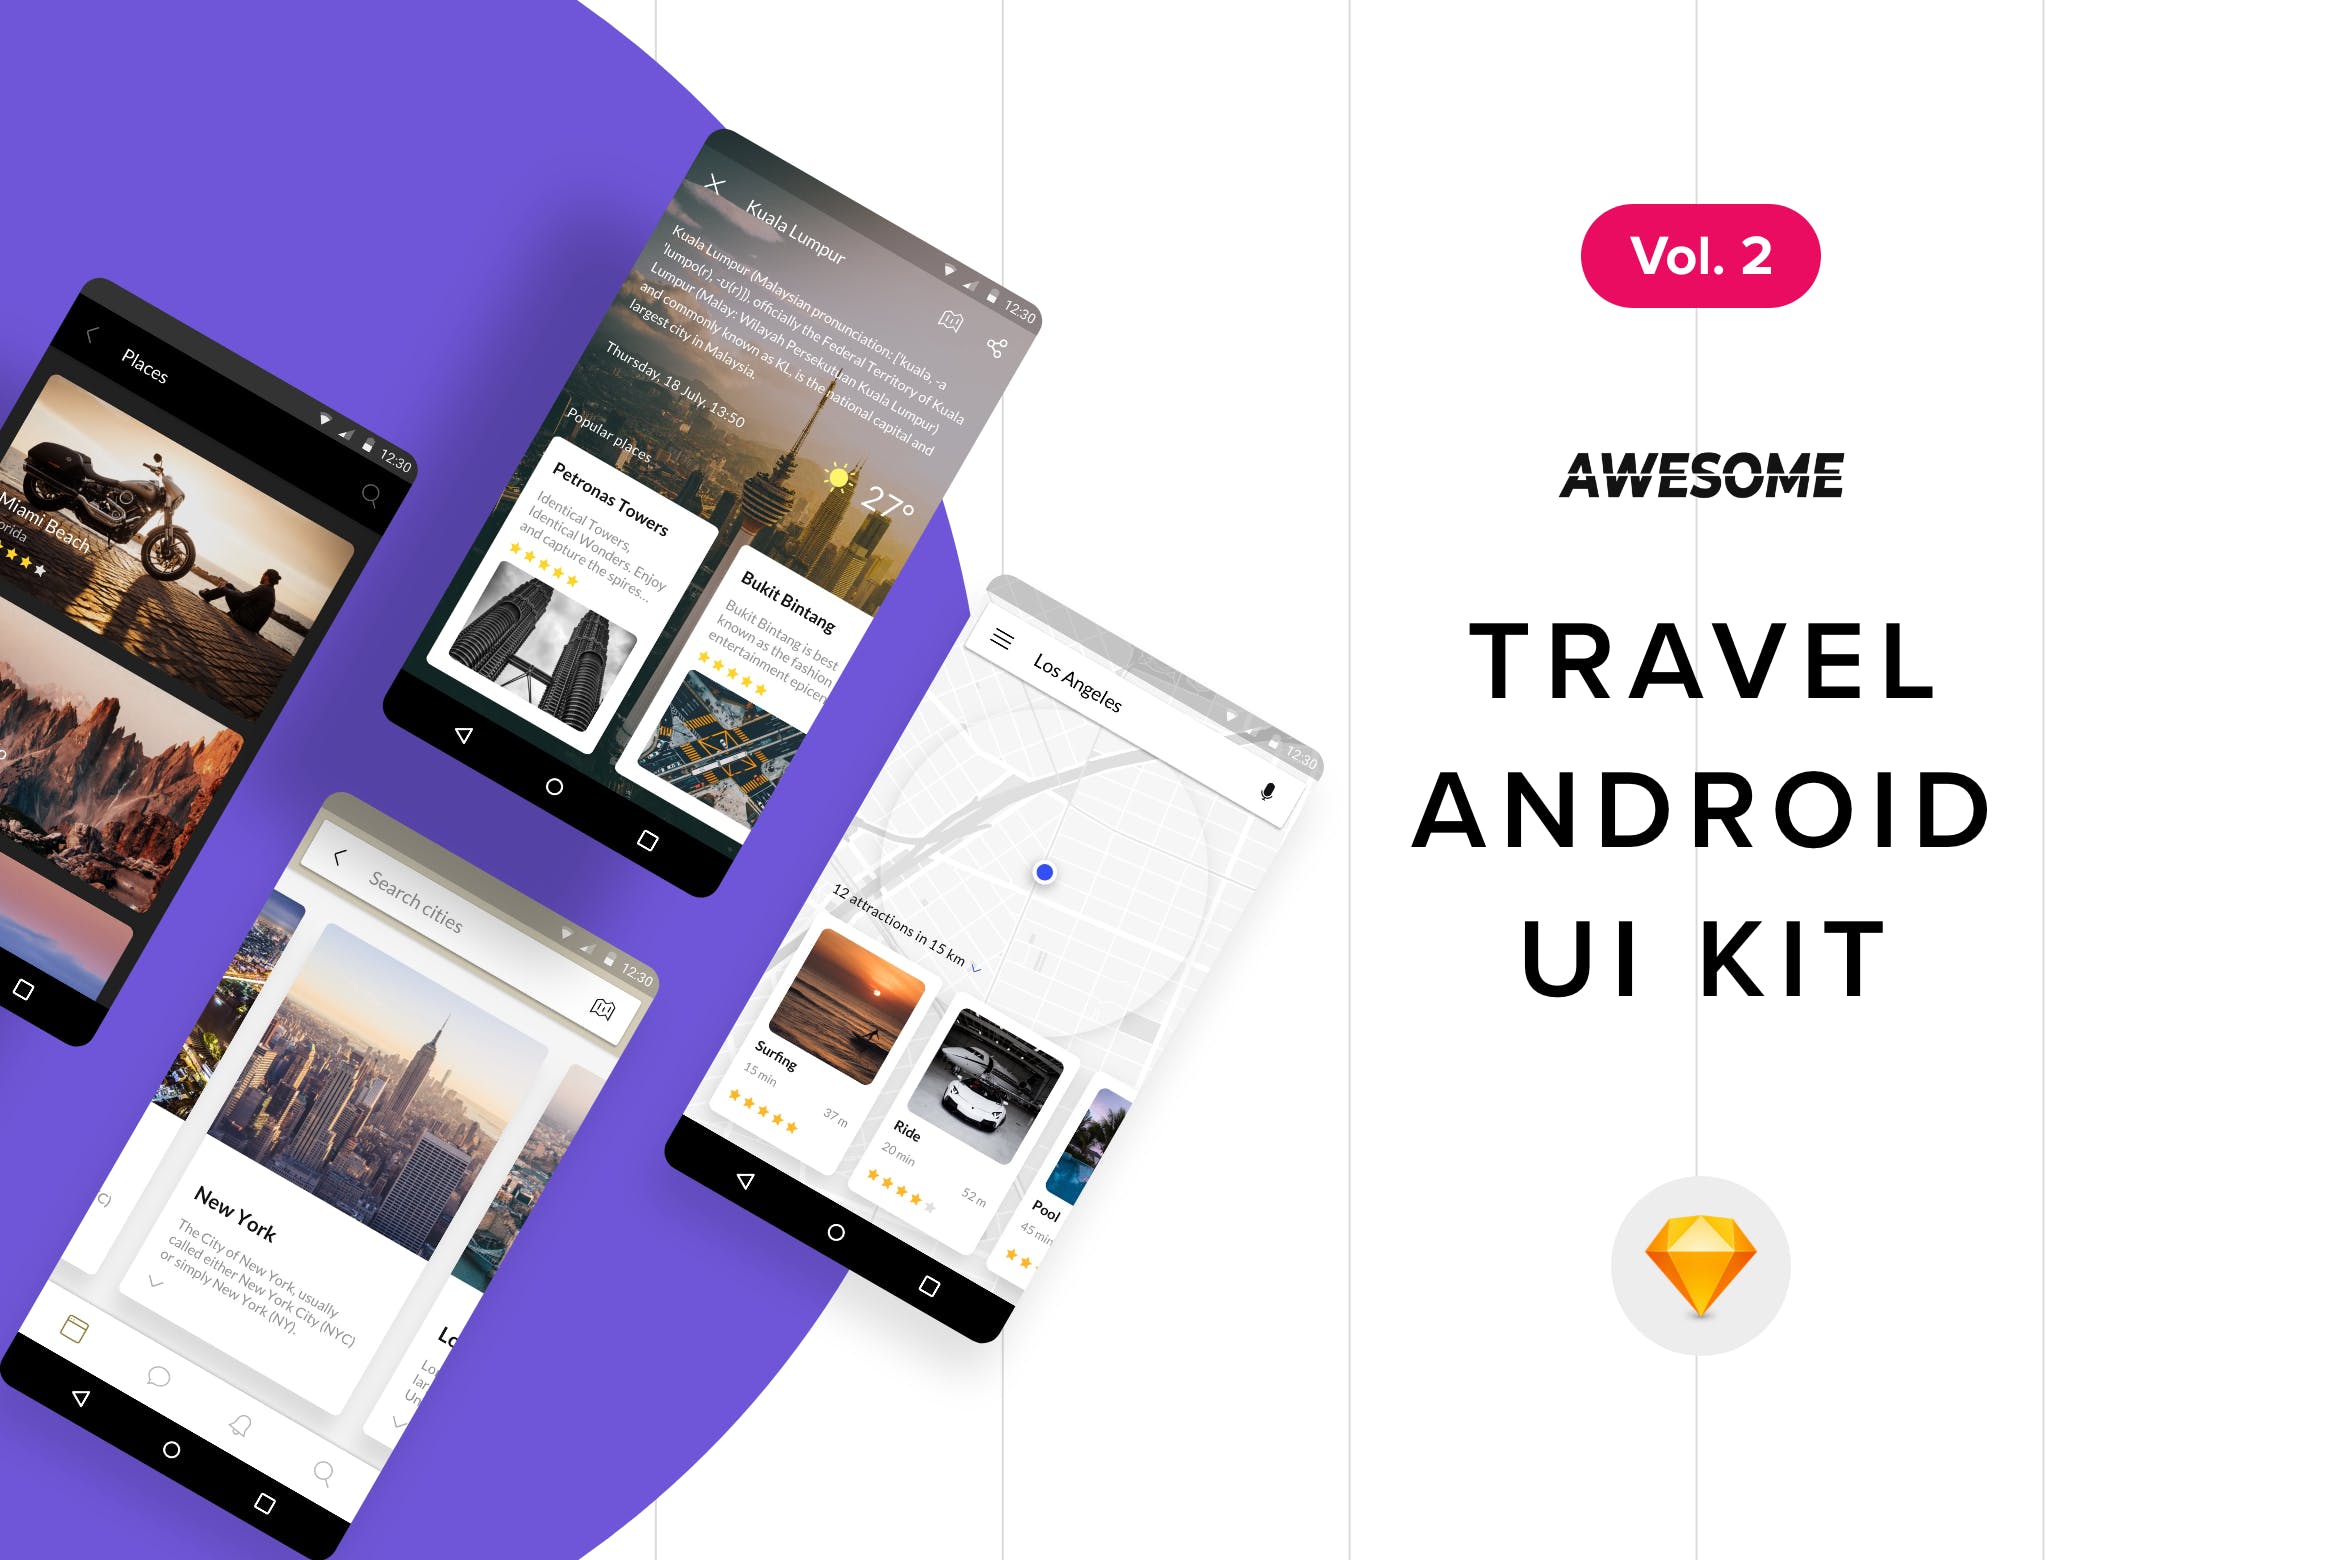 安卓平台旅游APP应用用户交互界面设计SKETCH模板v2 Android UI Kit – Travel Vol. 2 (Sketch)插图